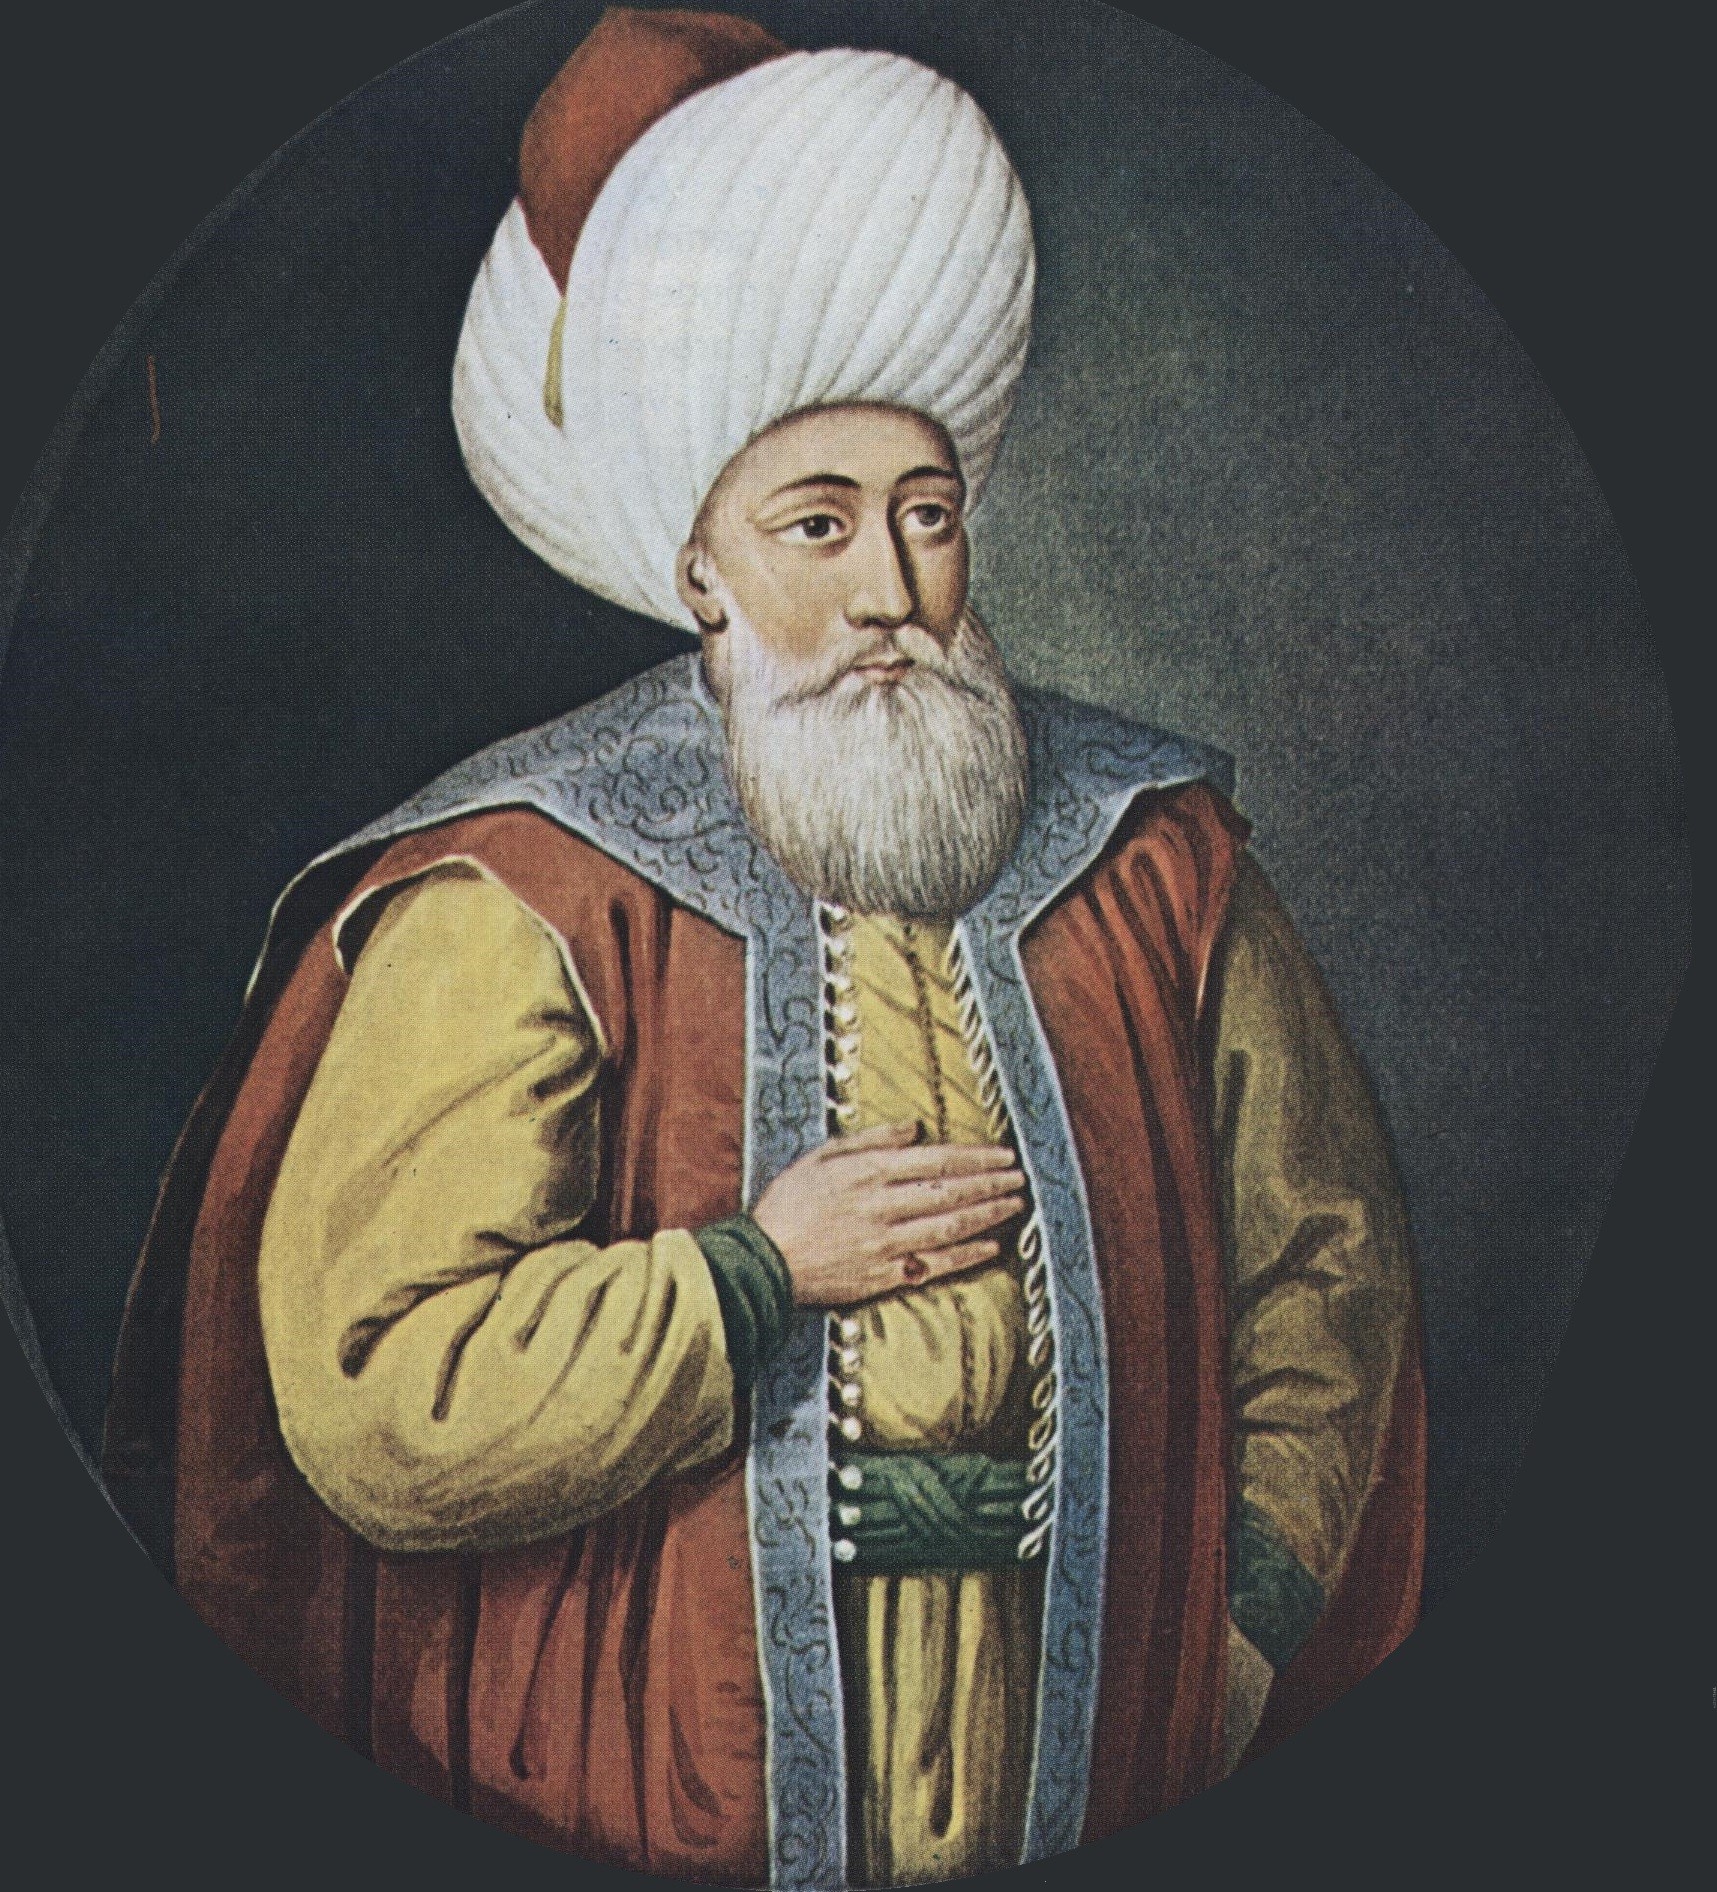 أهم إنجازات السلطان أورخان بن عثمان الأول